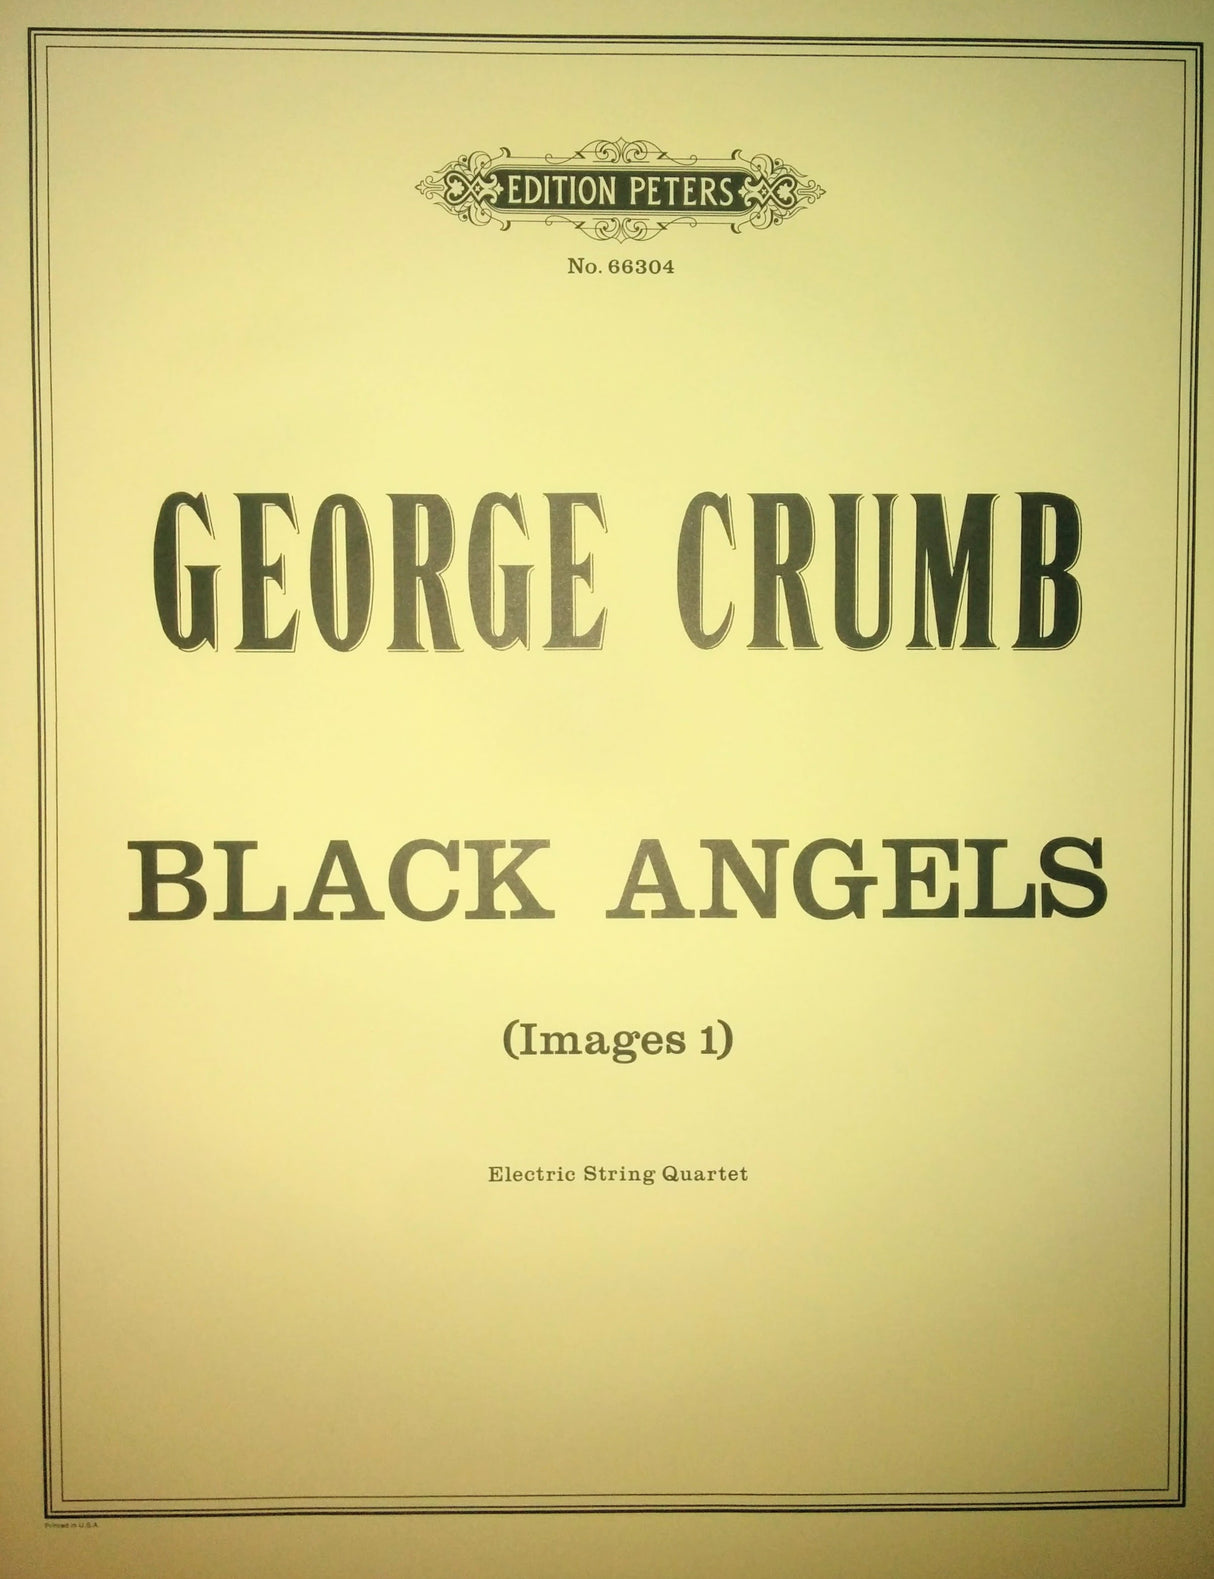 Crumb: Black Angels (Images I)